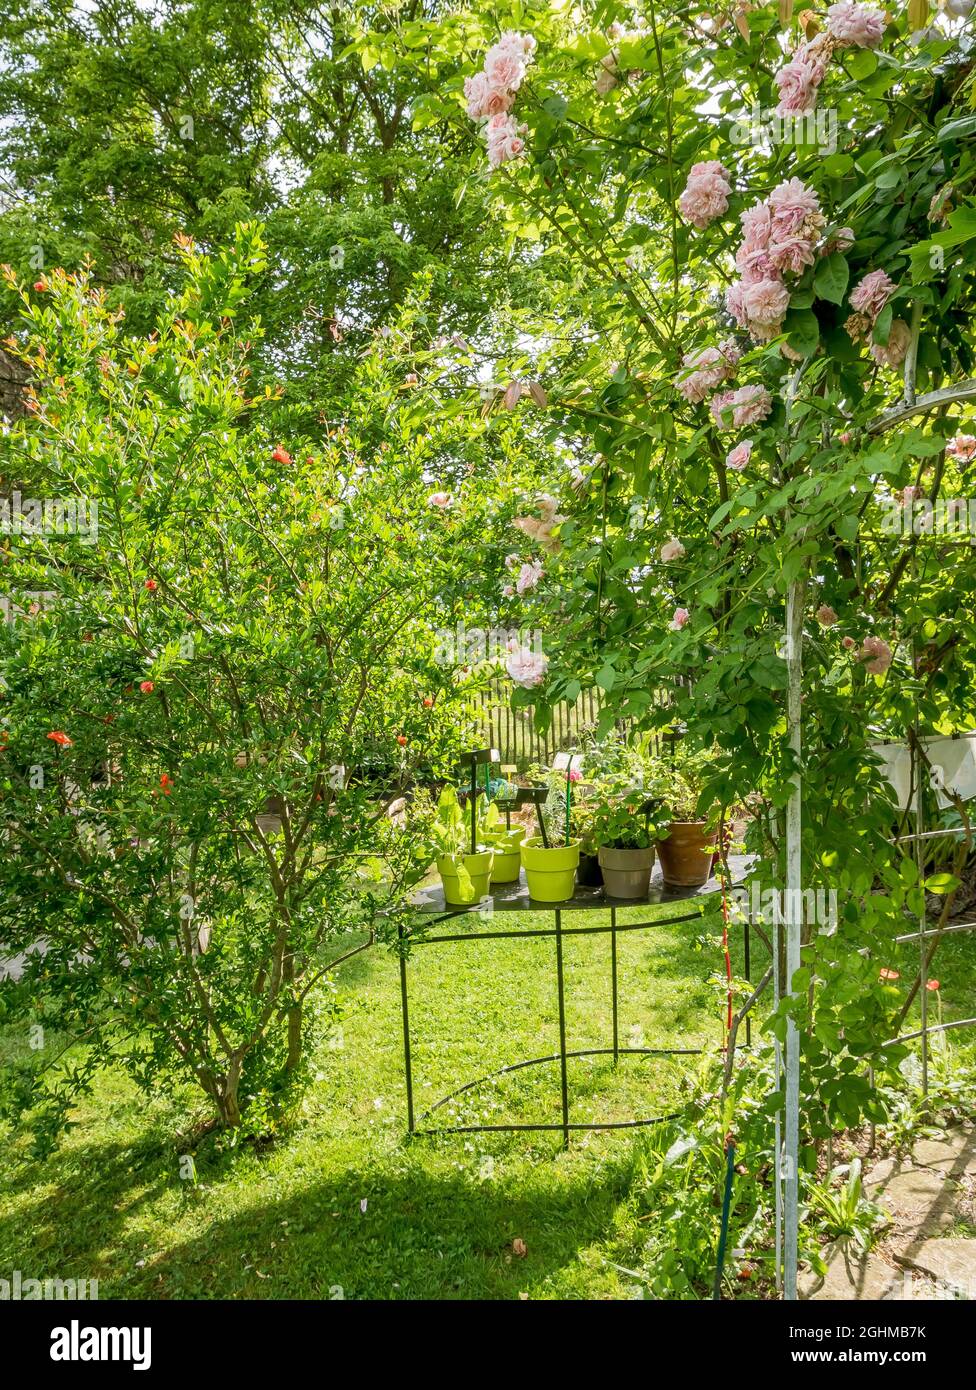 Potager, Jardin Insolite, Parc Floral Vincennes, Paris, France Stock Photo